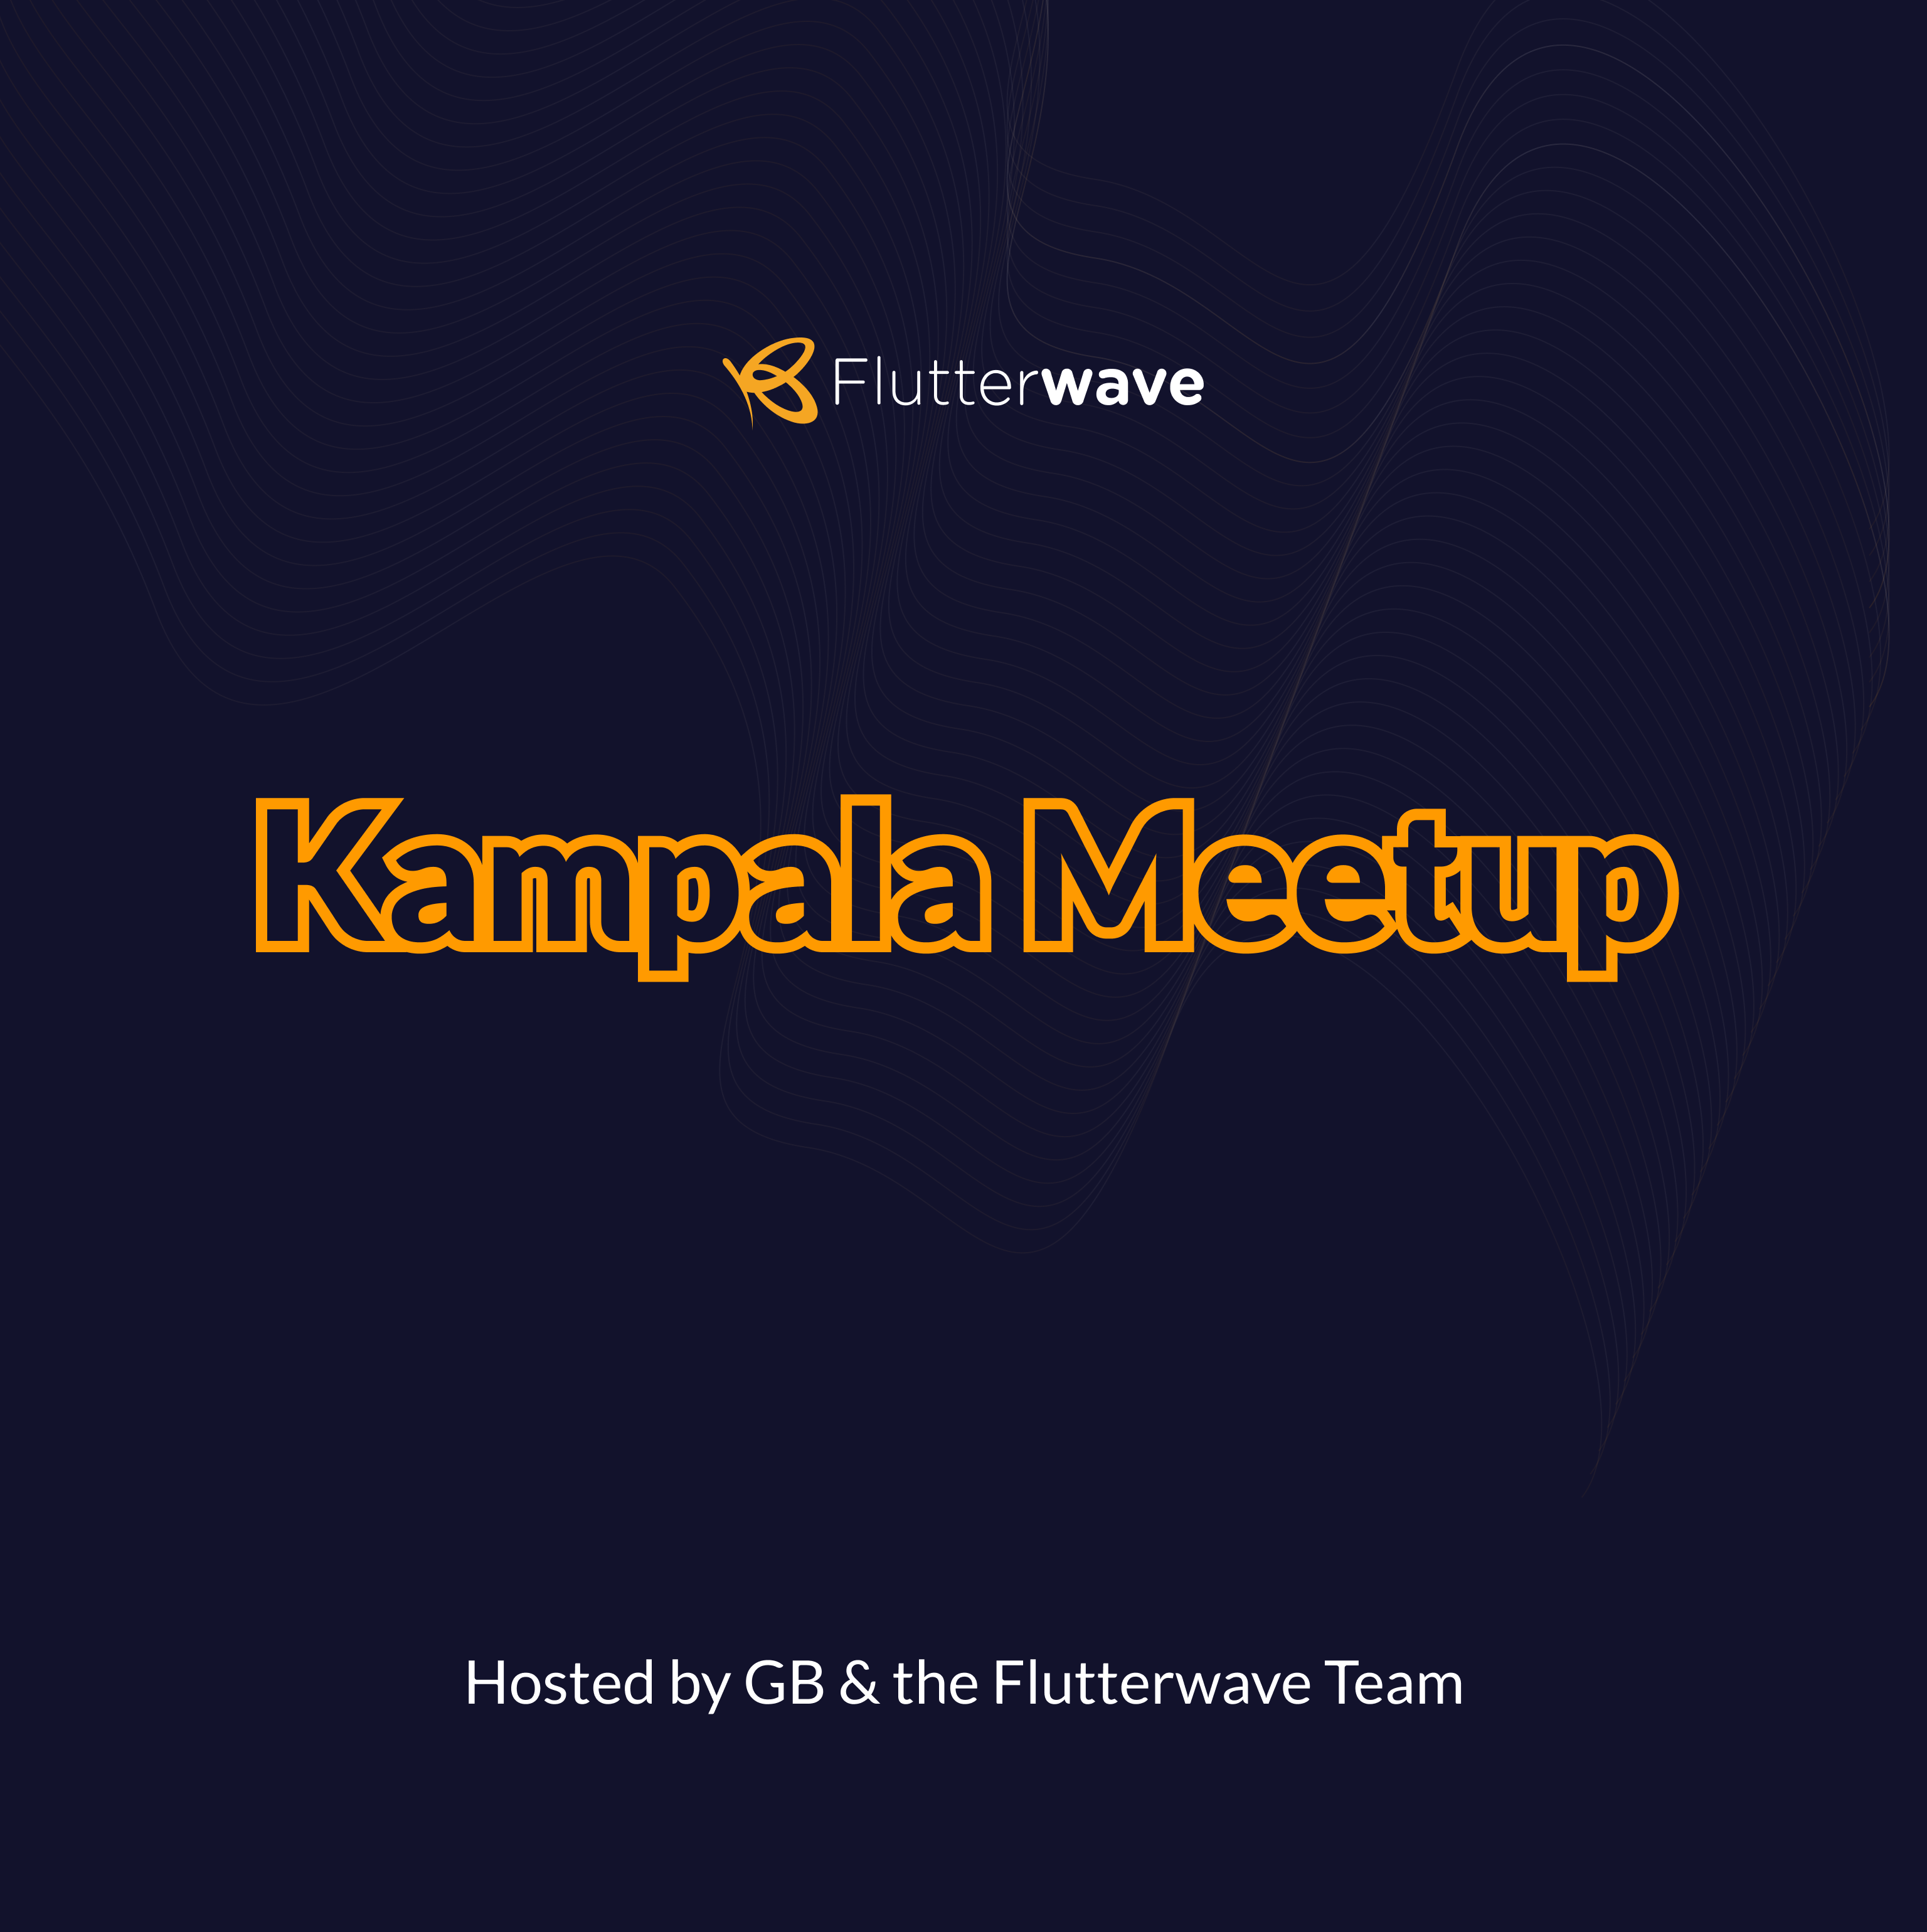 The Flutterwave Kampala Meetup